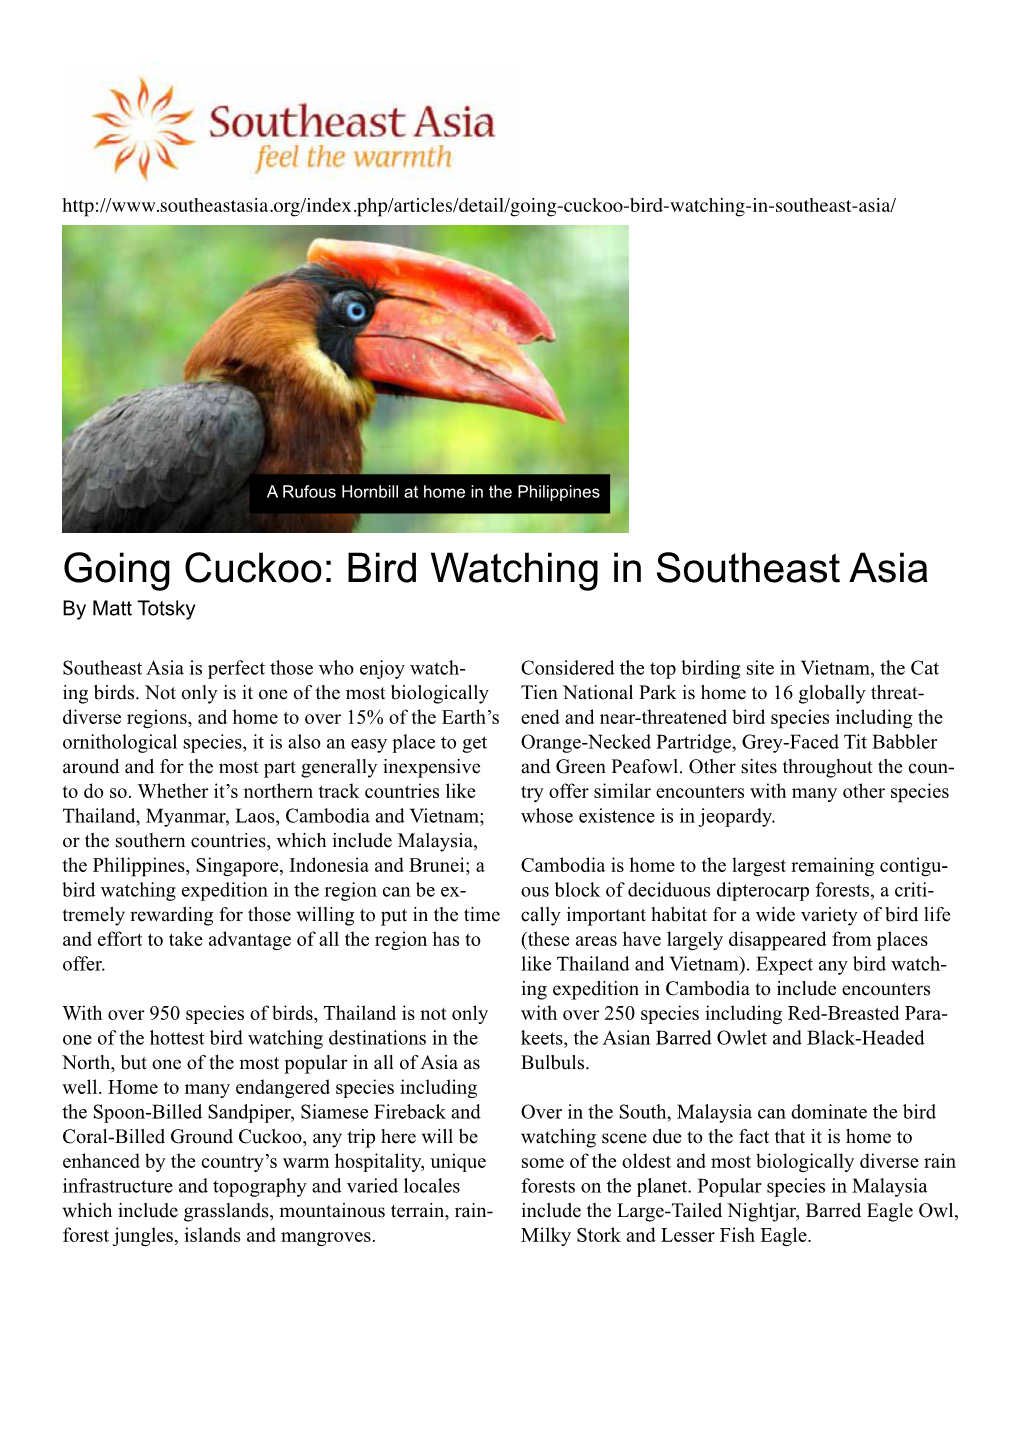 Bird Watching in Southeast Asia by Matt Totsky